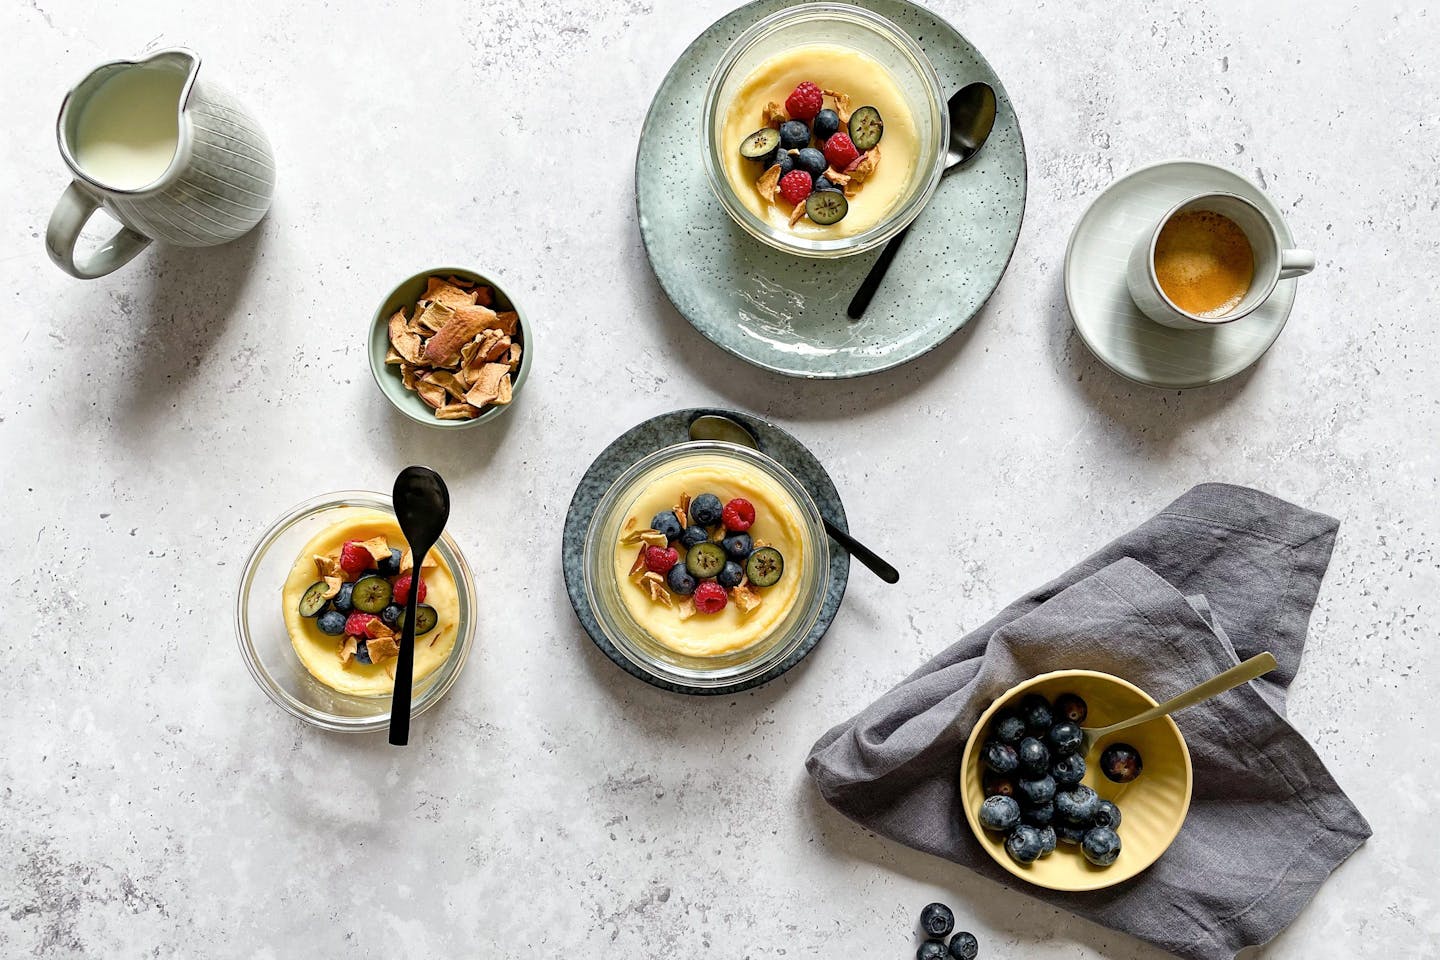 Gebackenes Joghurt eignet sich perfekt als cremiges Dessert und Kuchenersatz.